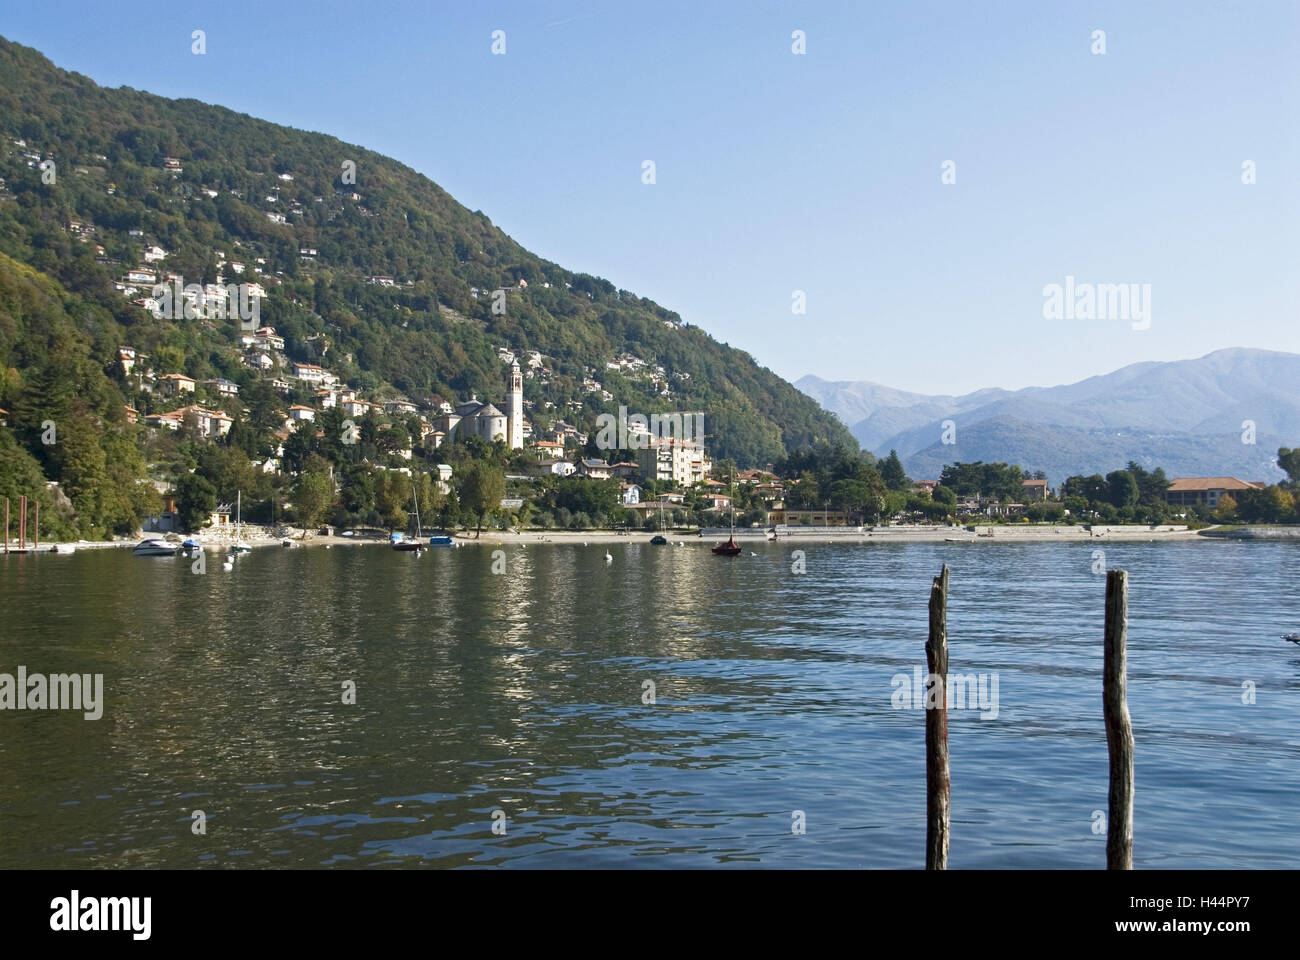 Italy, Lago Maggiore, Cannero Riviera, local view, Stock Photo